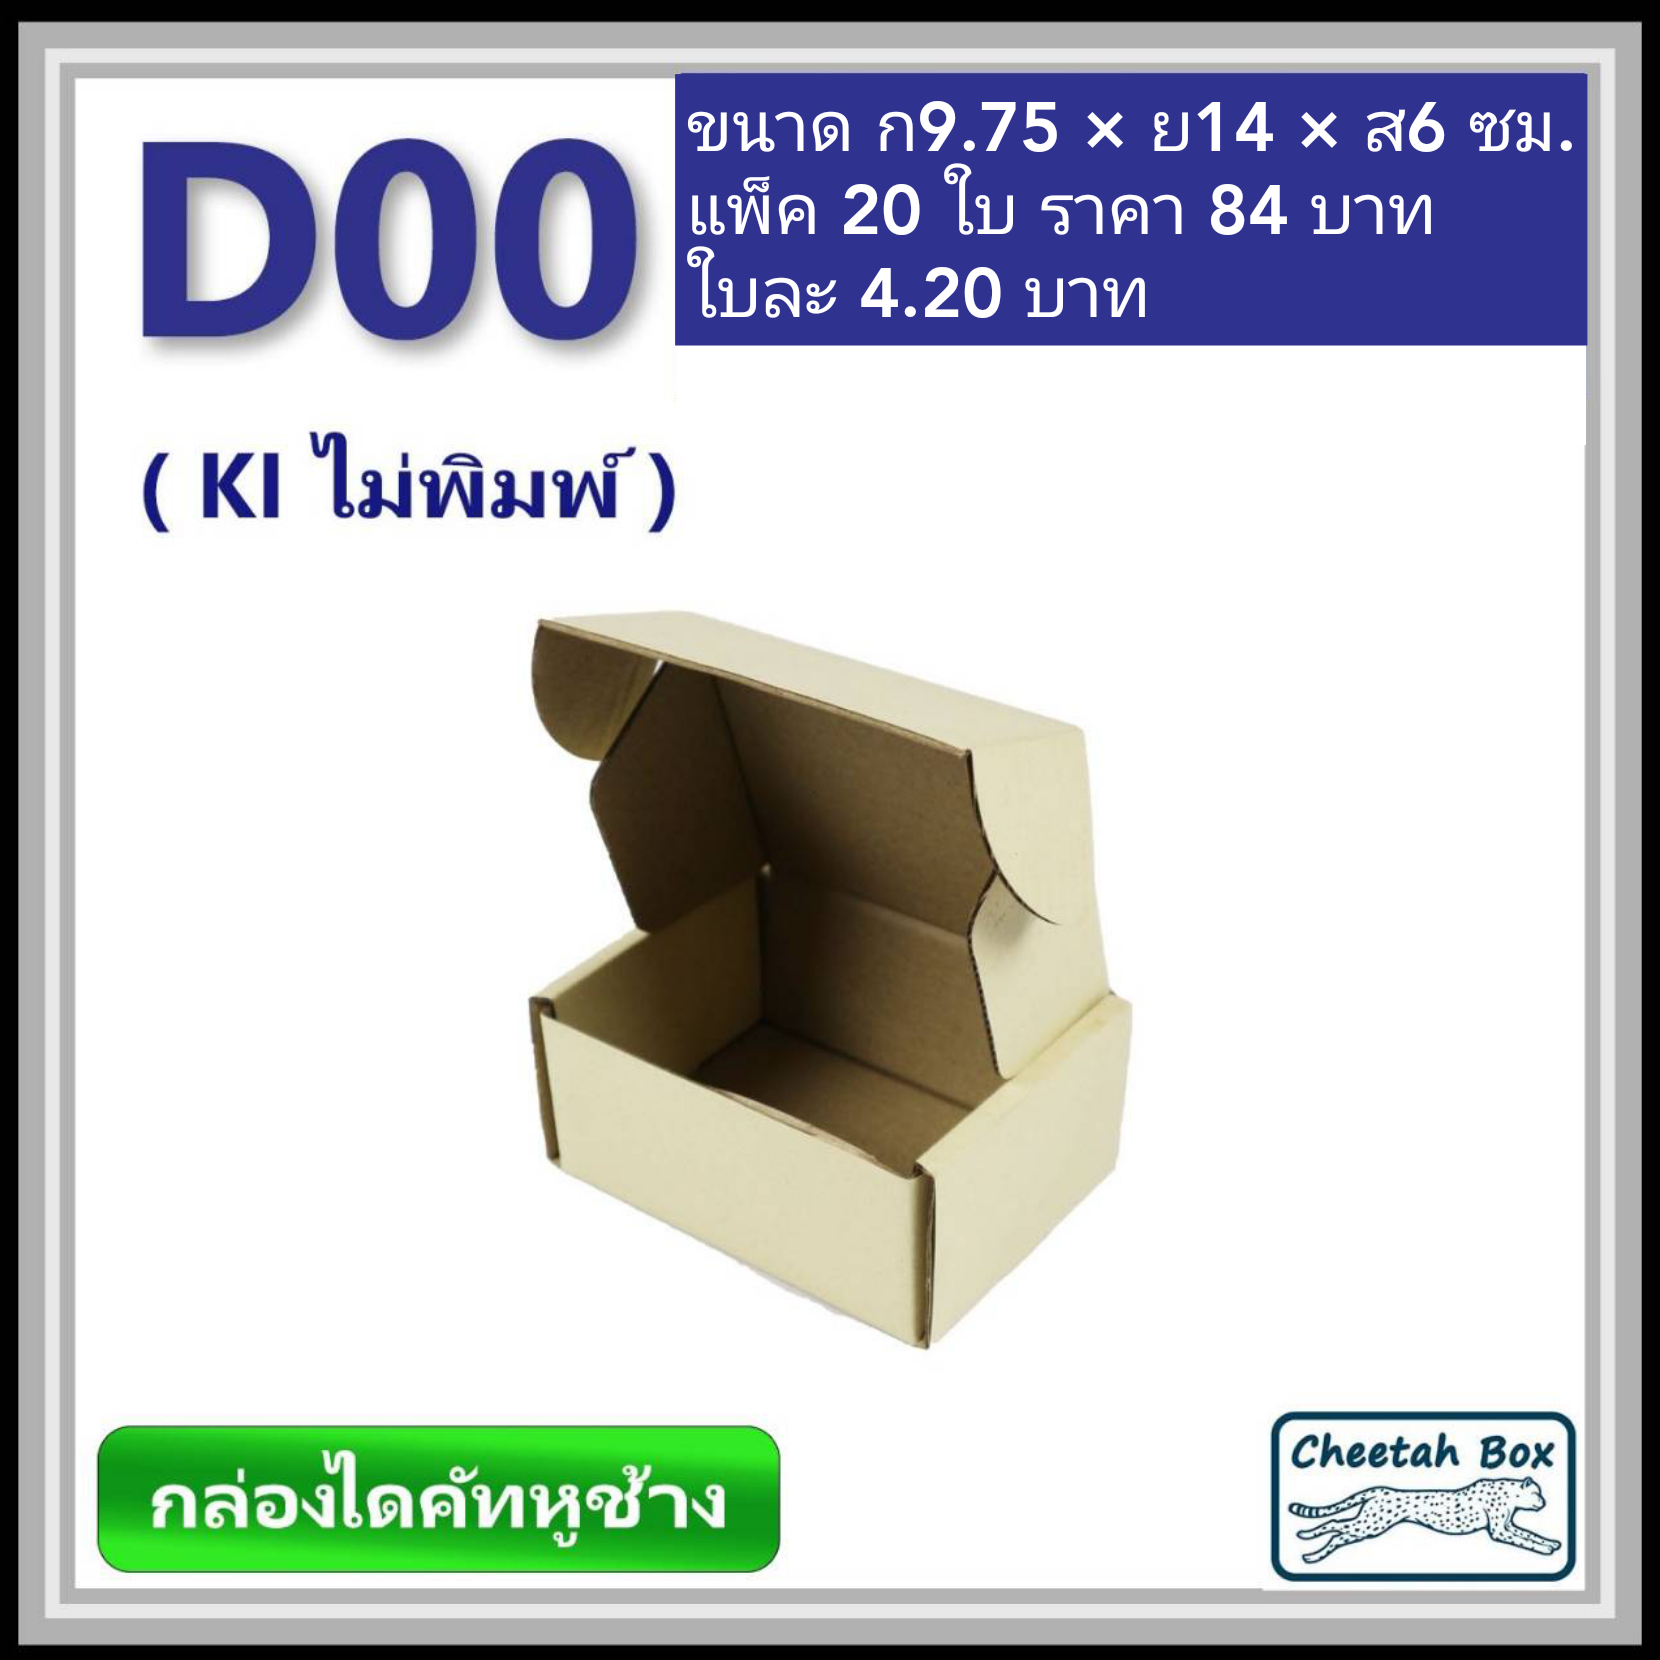 กล่องไดคัทหูช้างขนาด 00 รหัสกล่อง D00 ไม่พิมพ์ (Die-cut Box) ขนาด 9.75W x 14L x 6H cm.